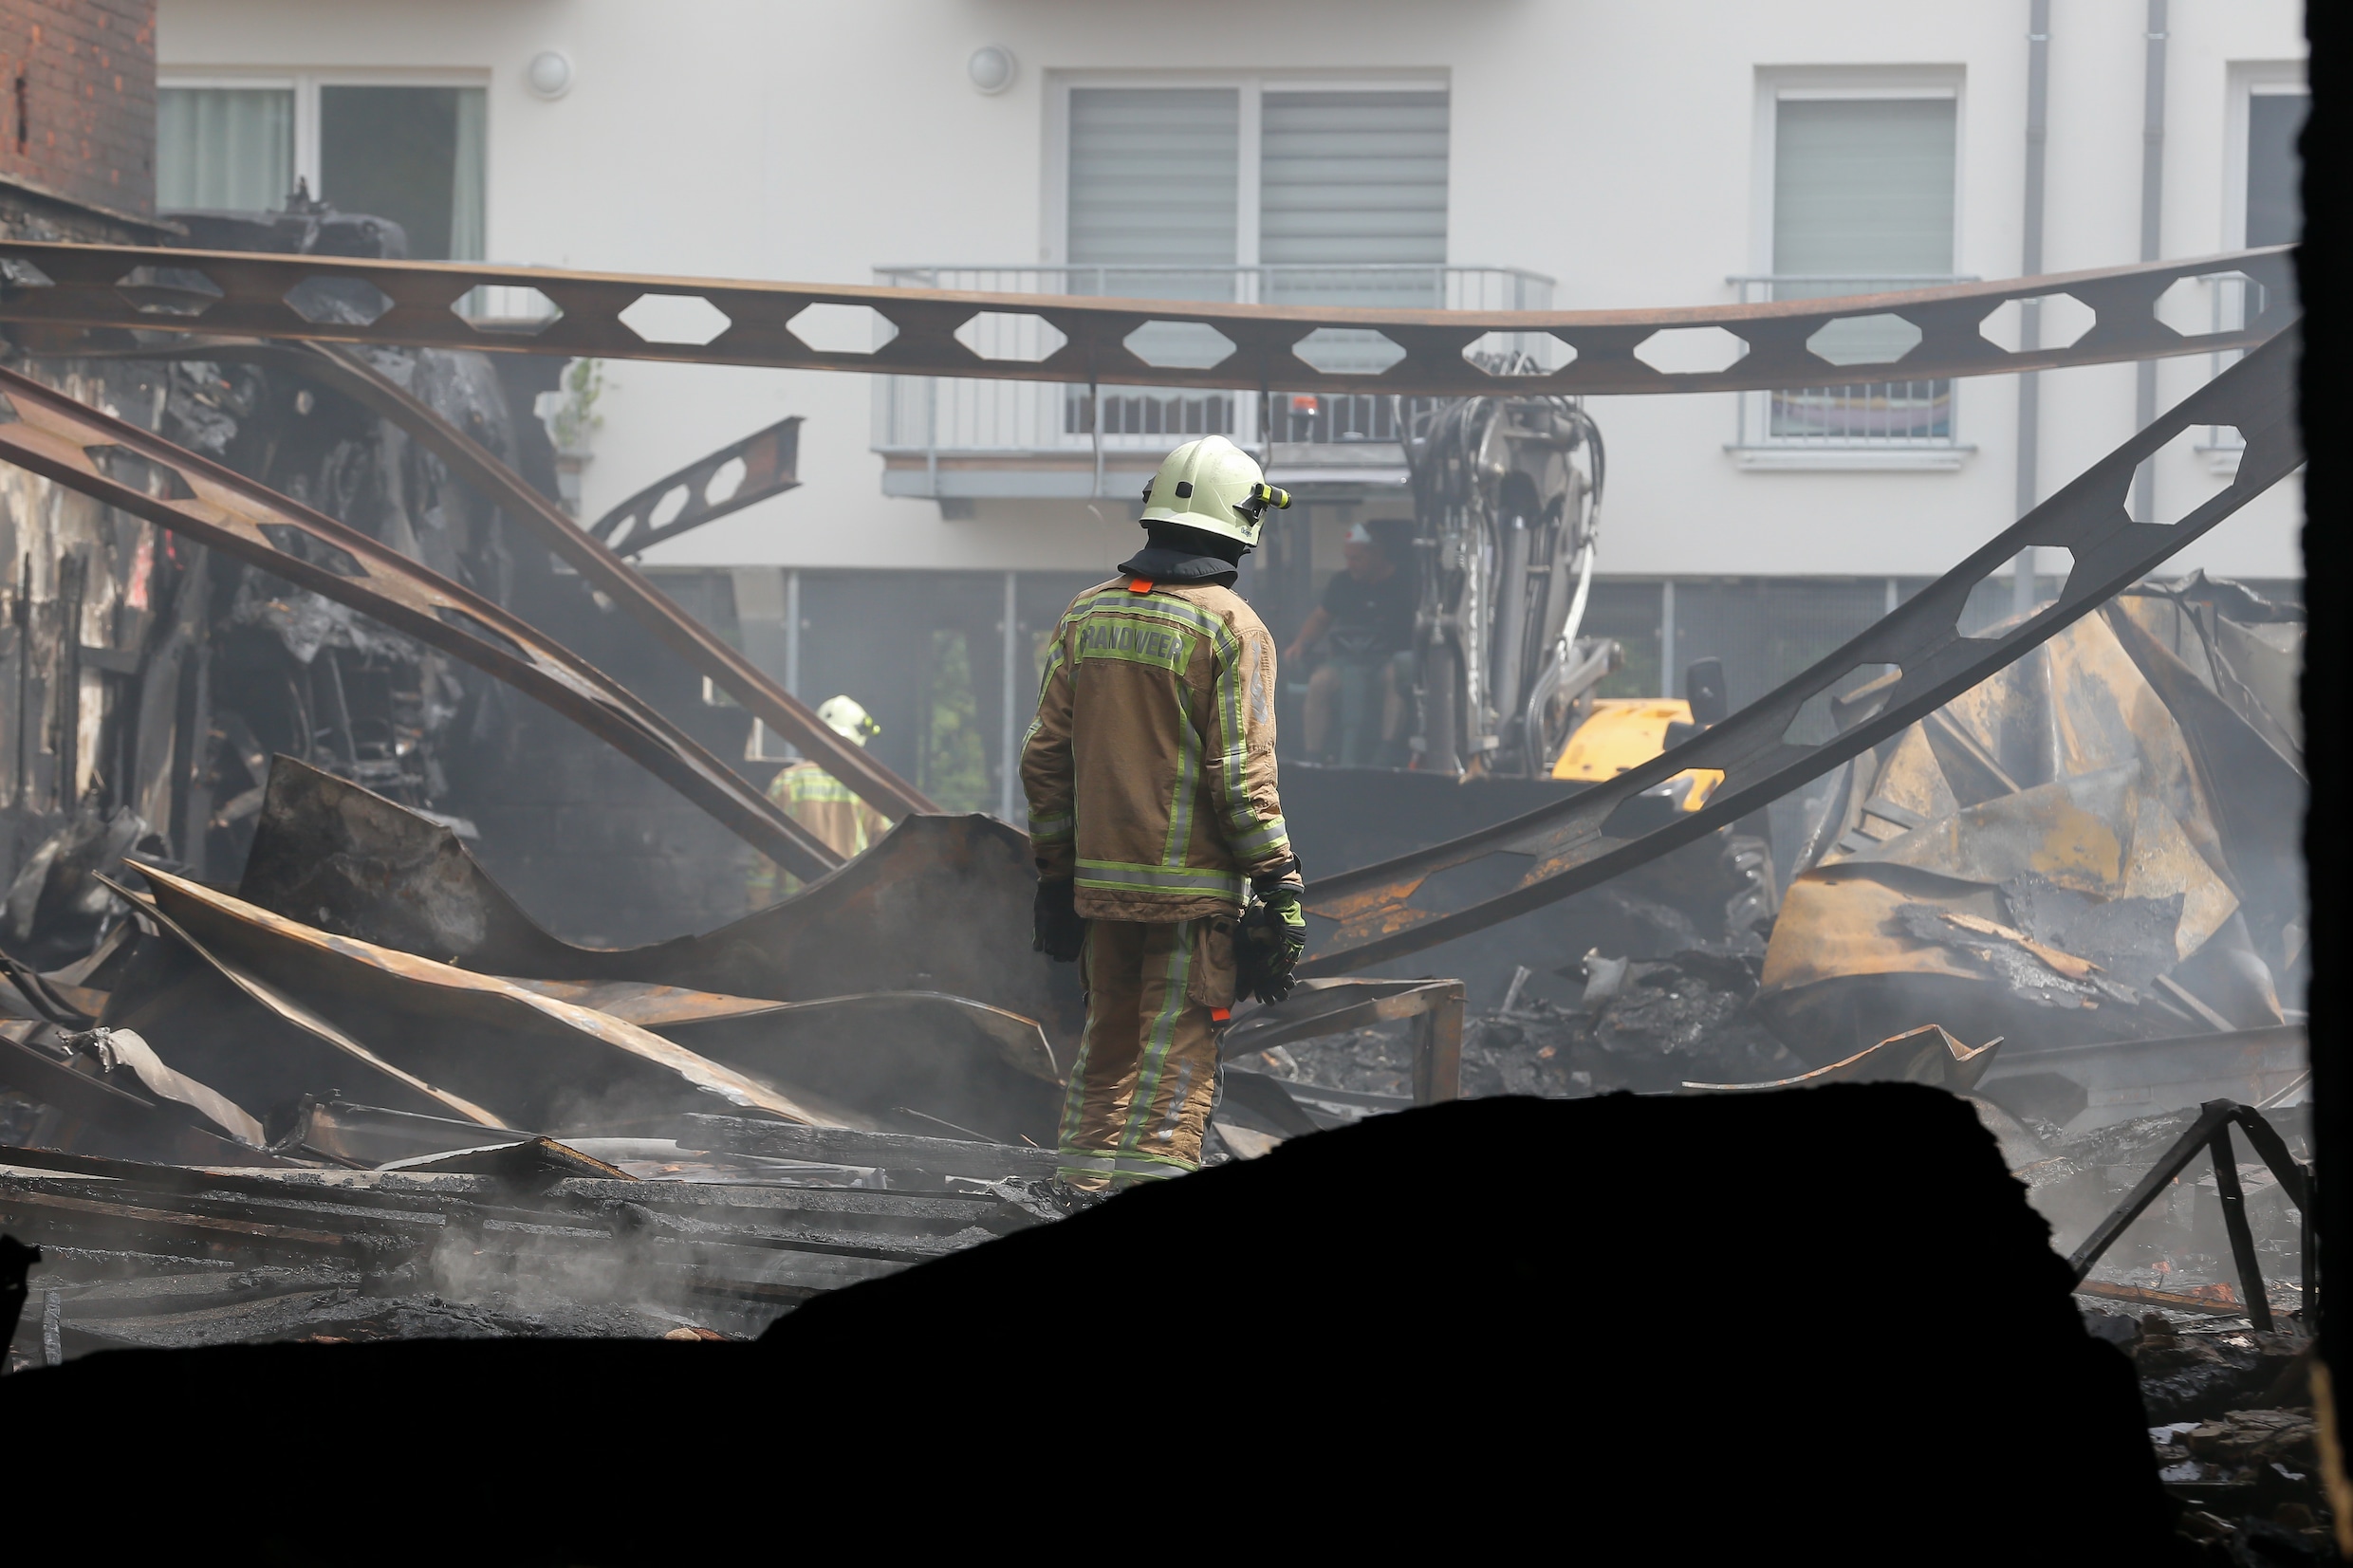 Twee brandweermannen komen om bij zware brand in Beringen: ‘Een zwarte dag voor ons korps’